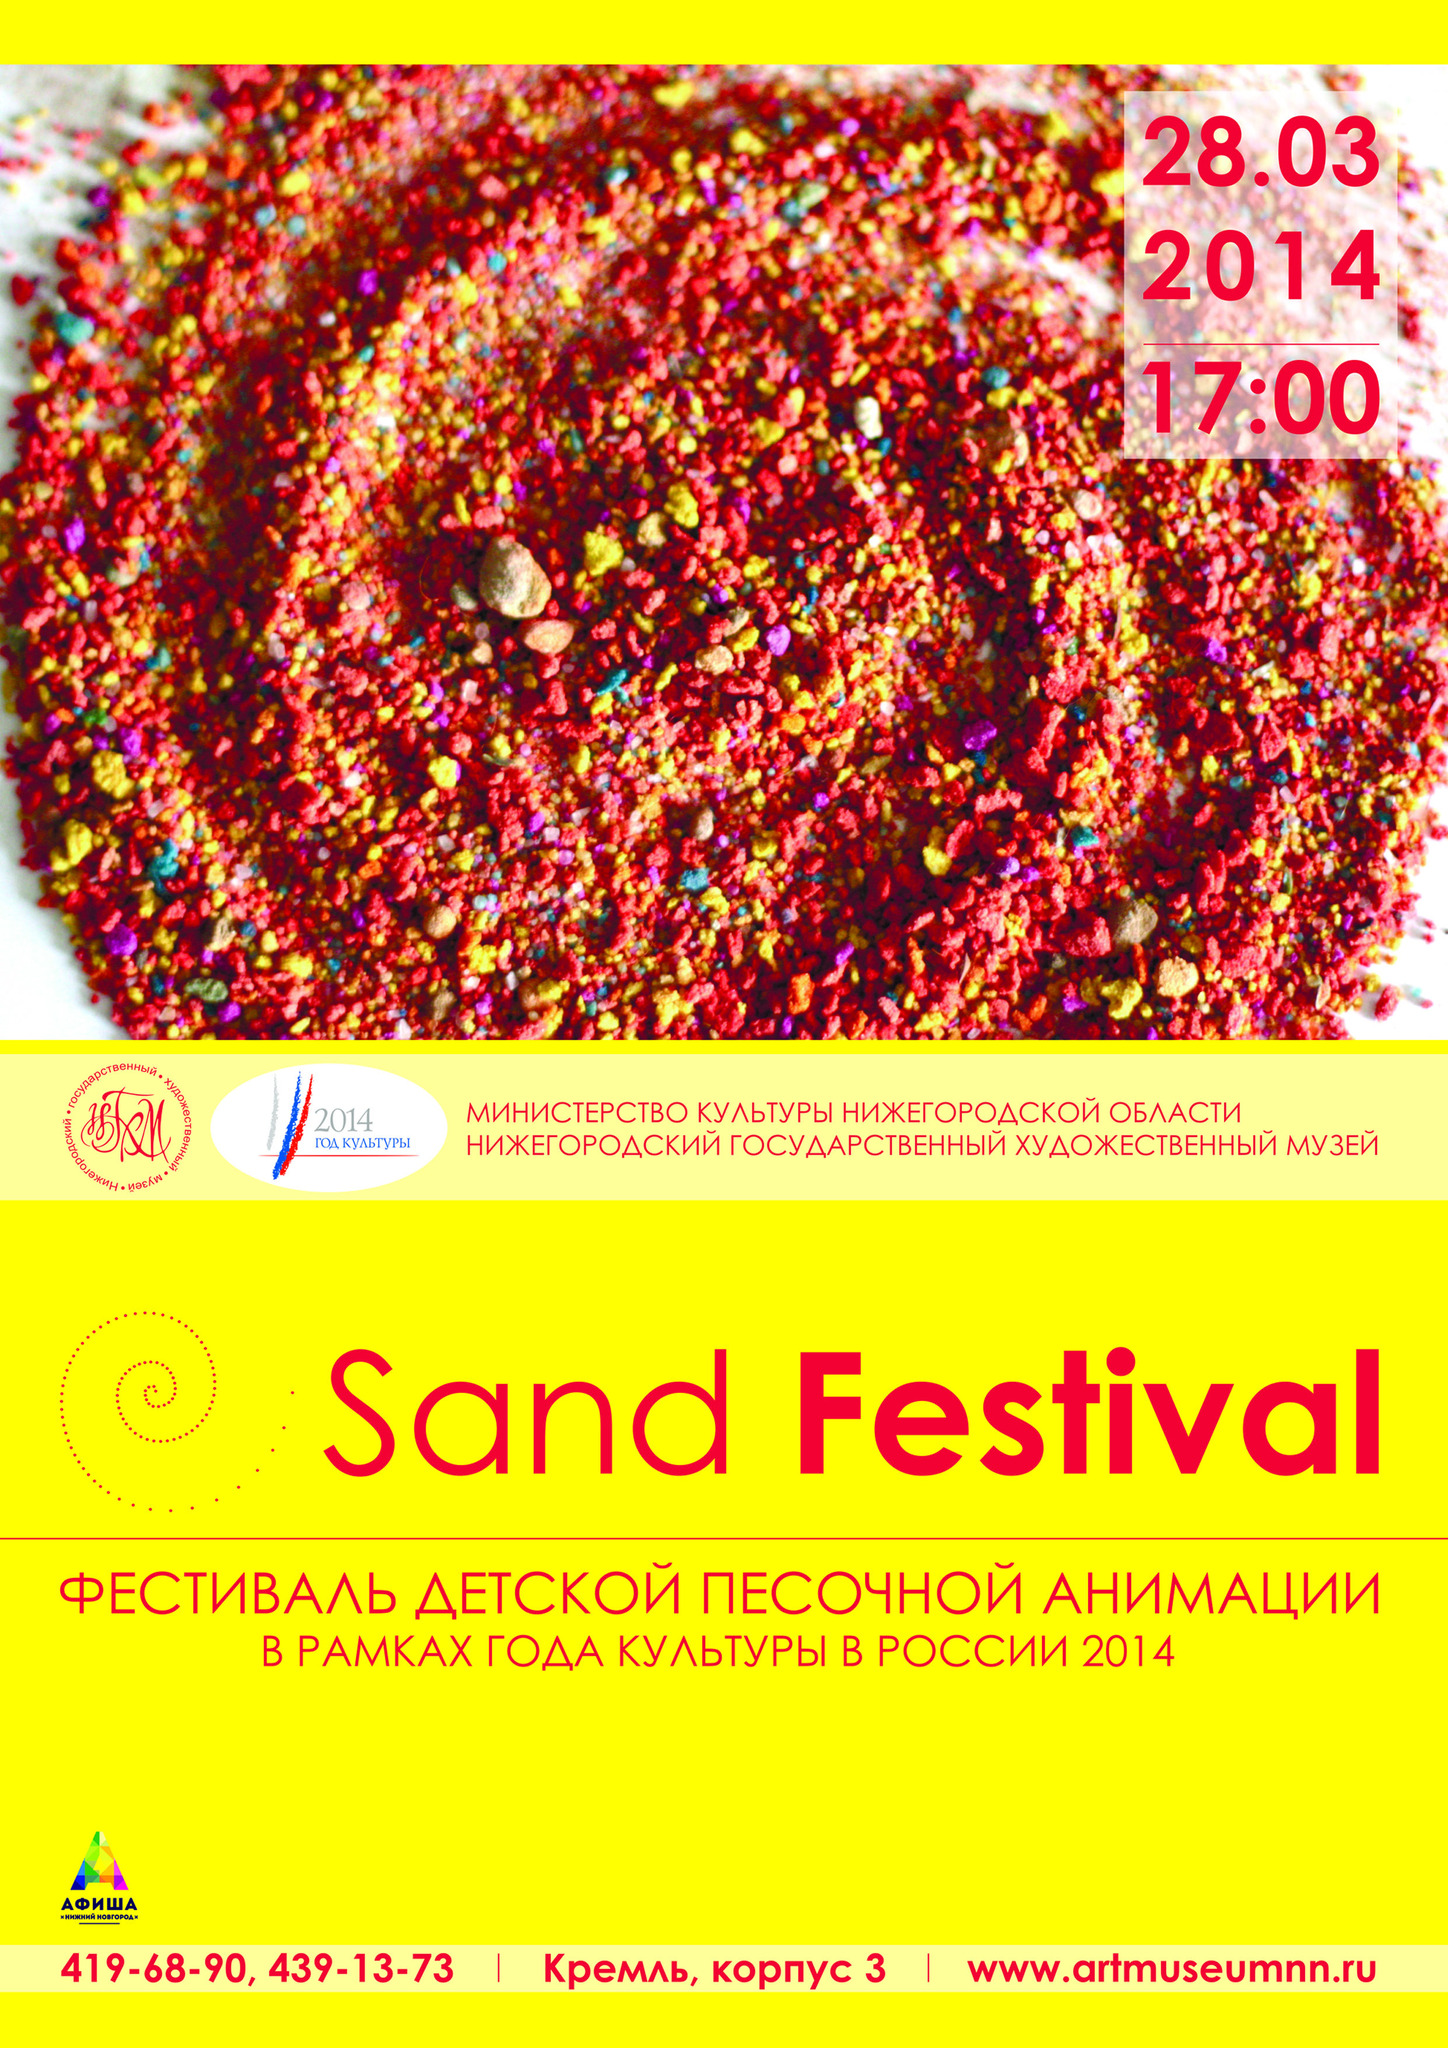 I Children’s Festival of sand animation